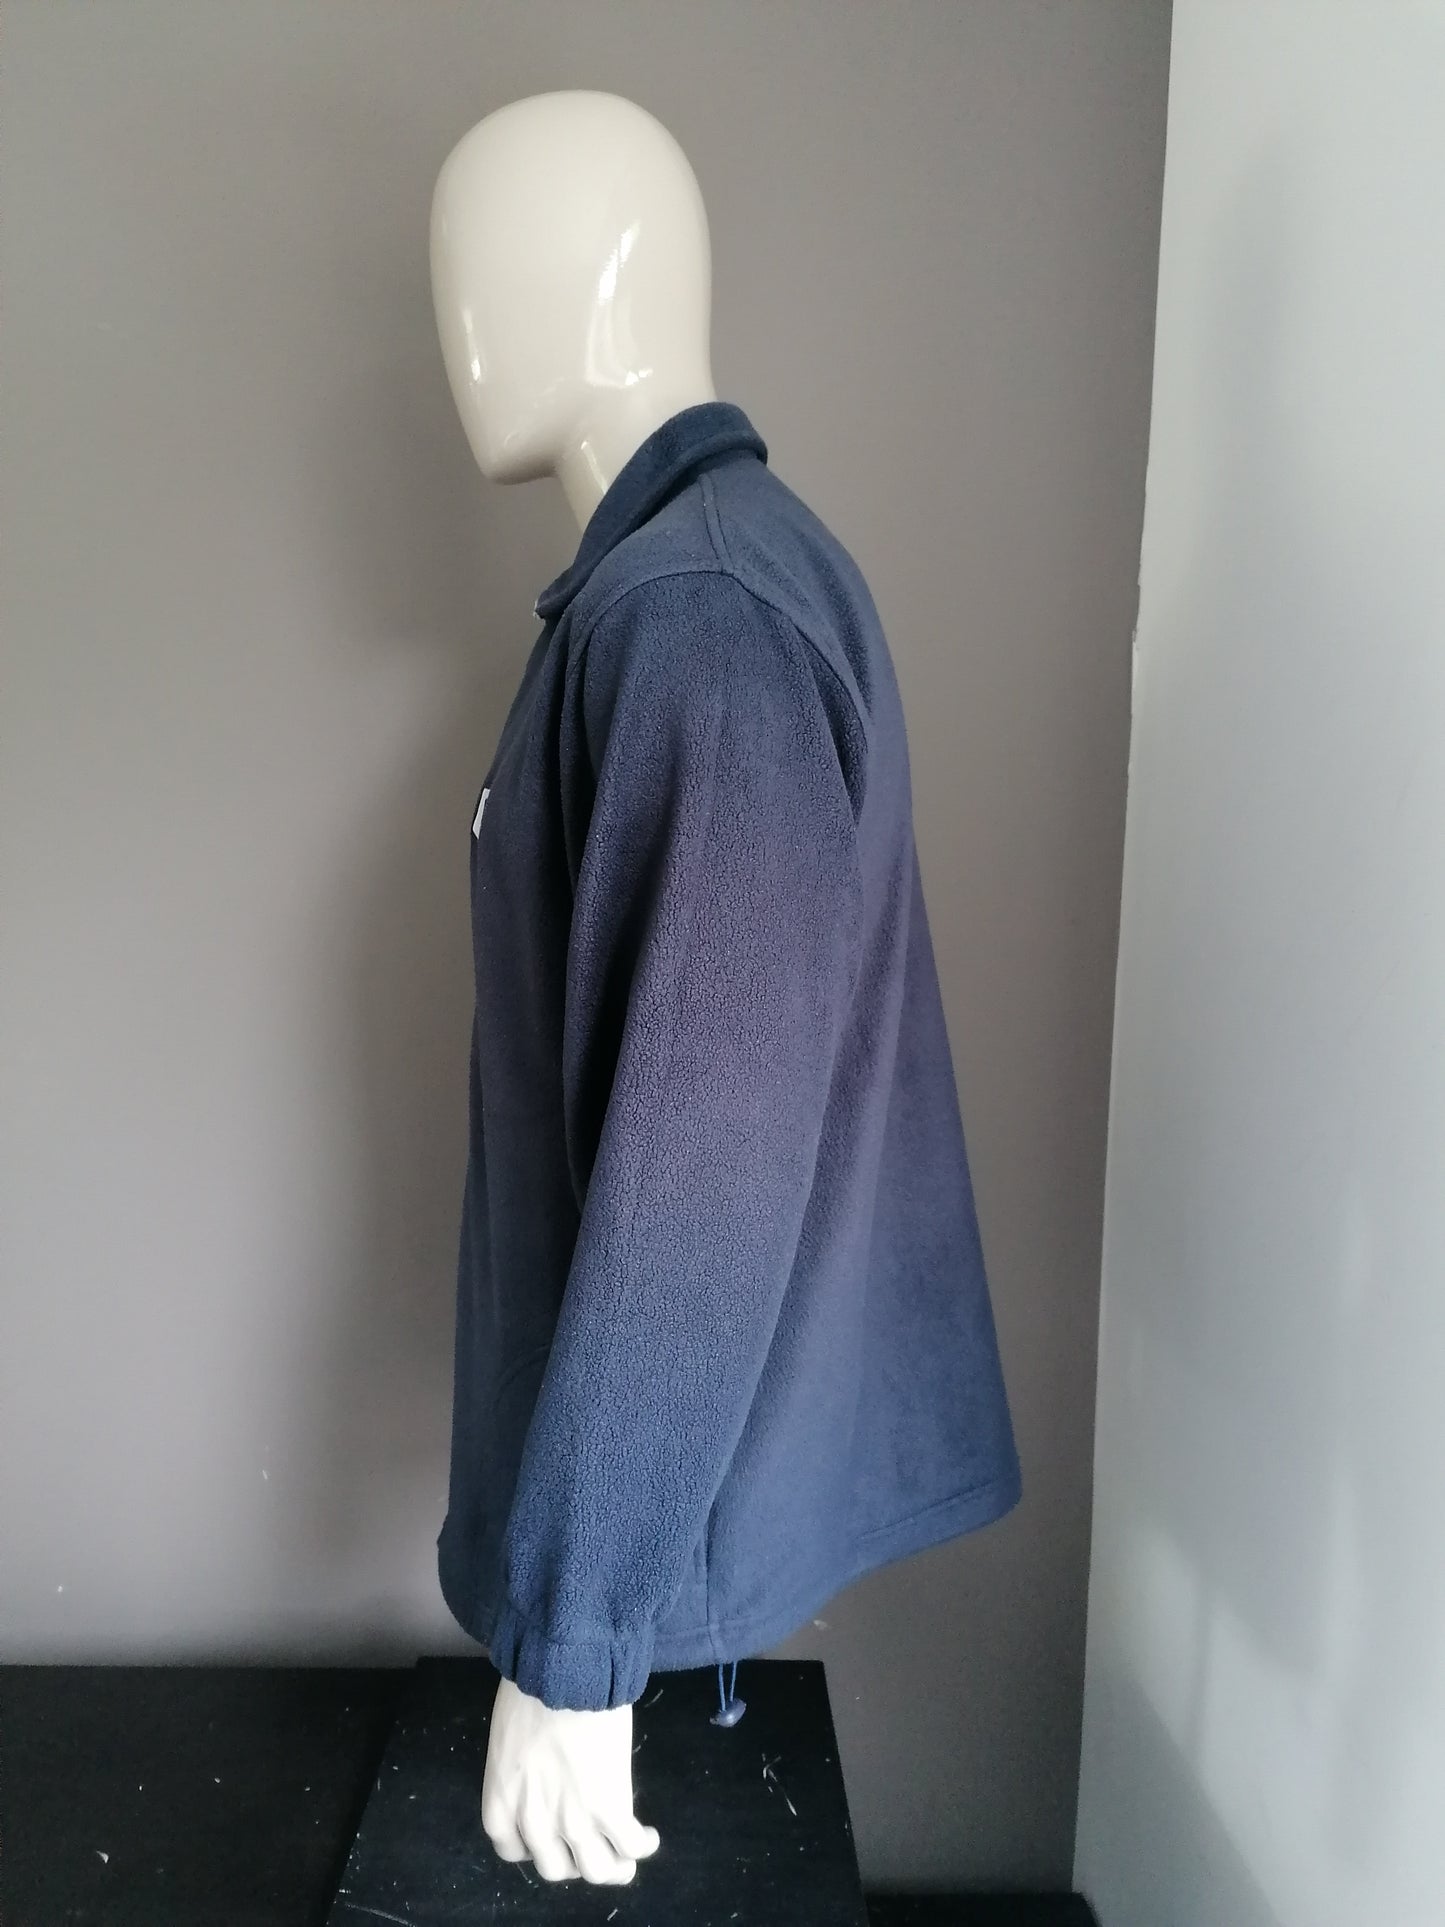 Chaleco / chaqueta de vellón de textiles marinos. Color azul oscuro. Tamaño XL